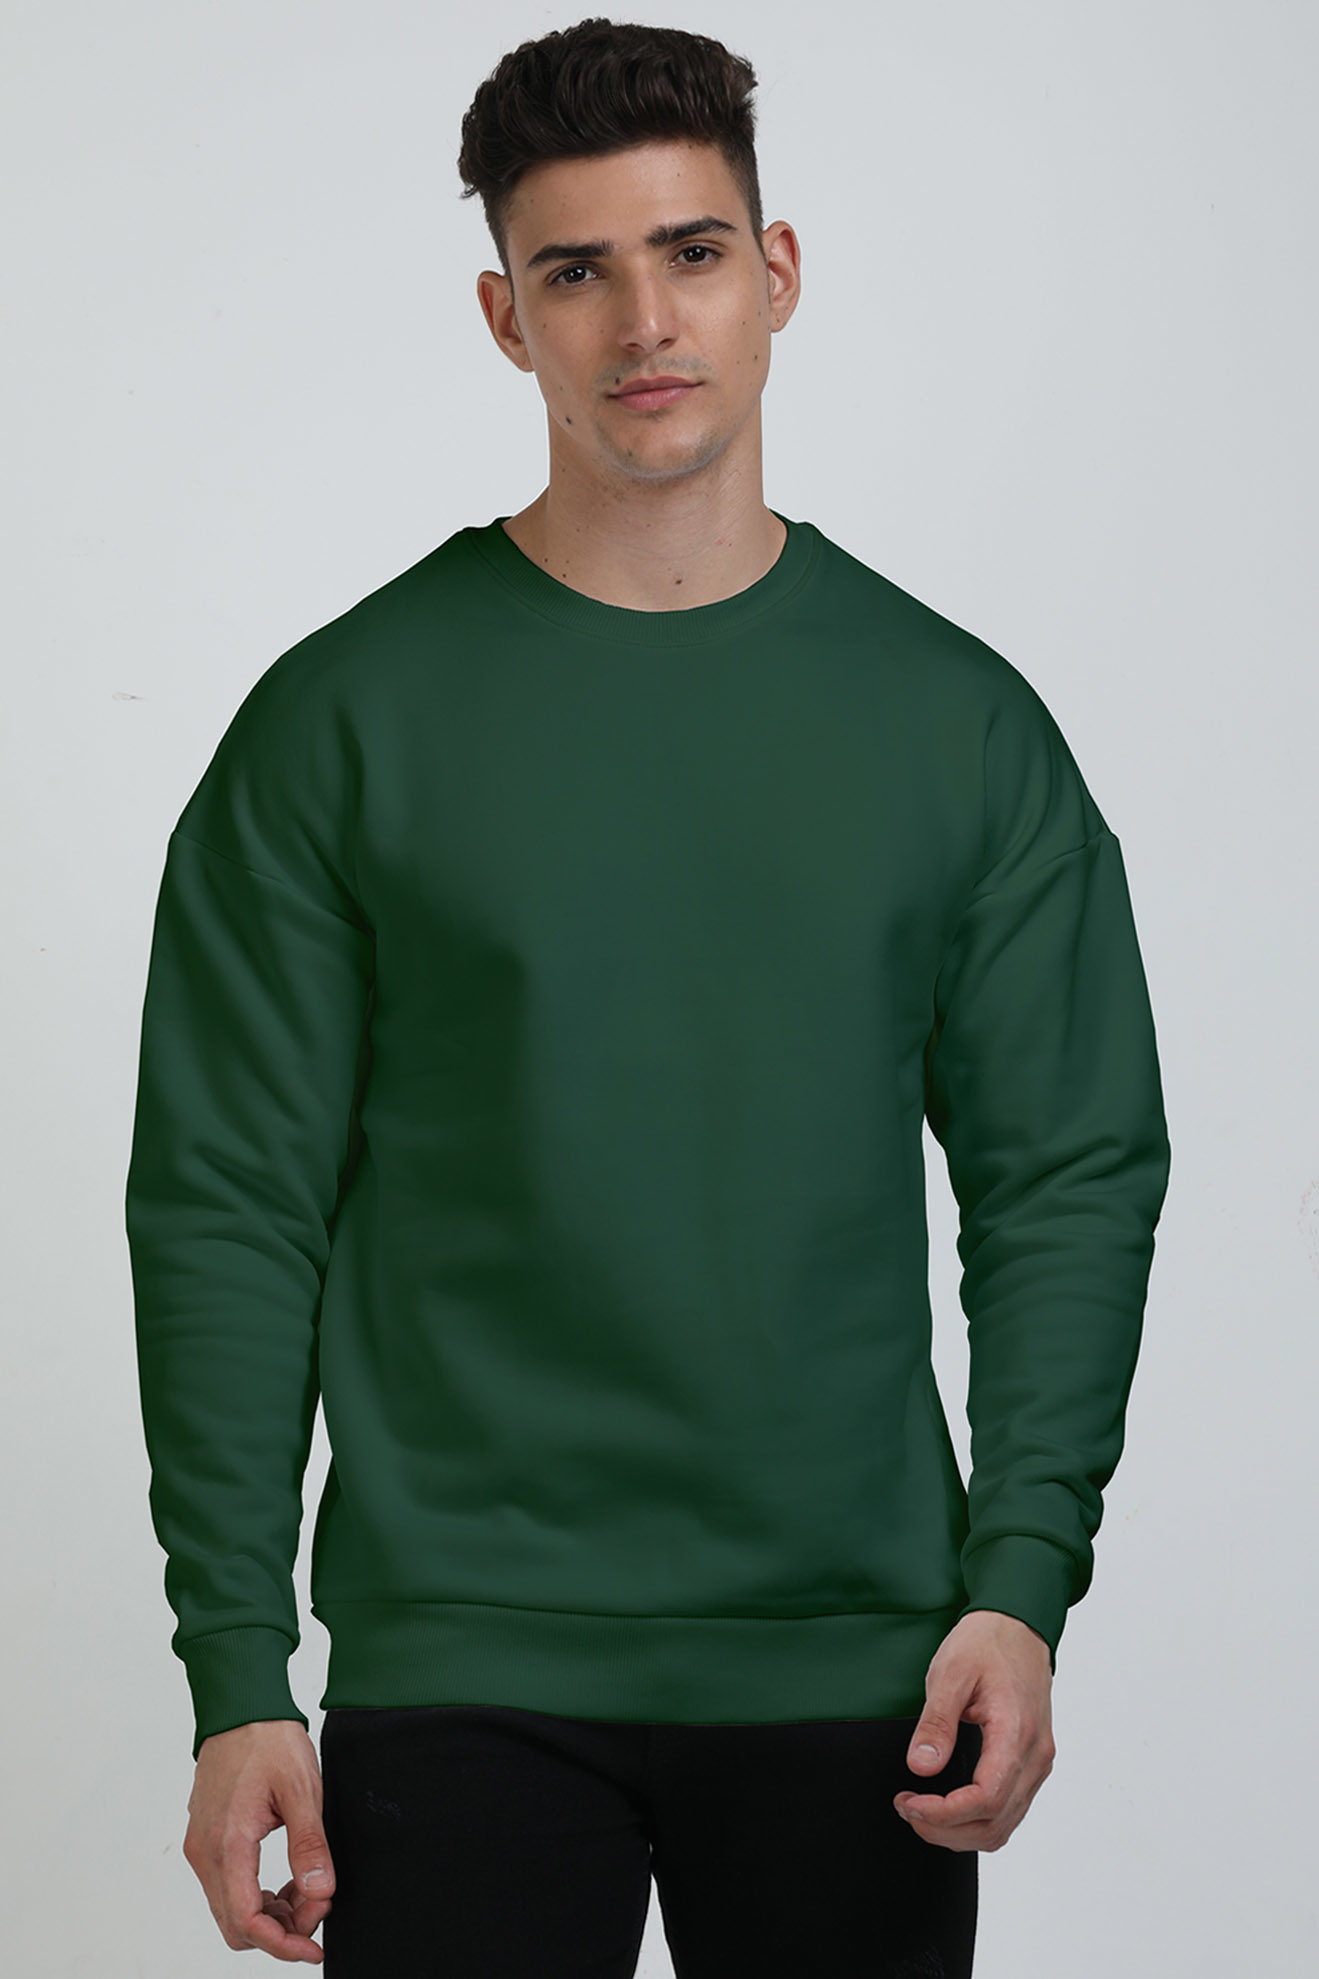 Unisex Oversized Sweatshirts